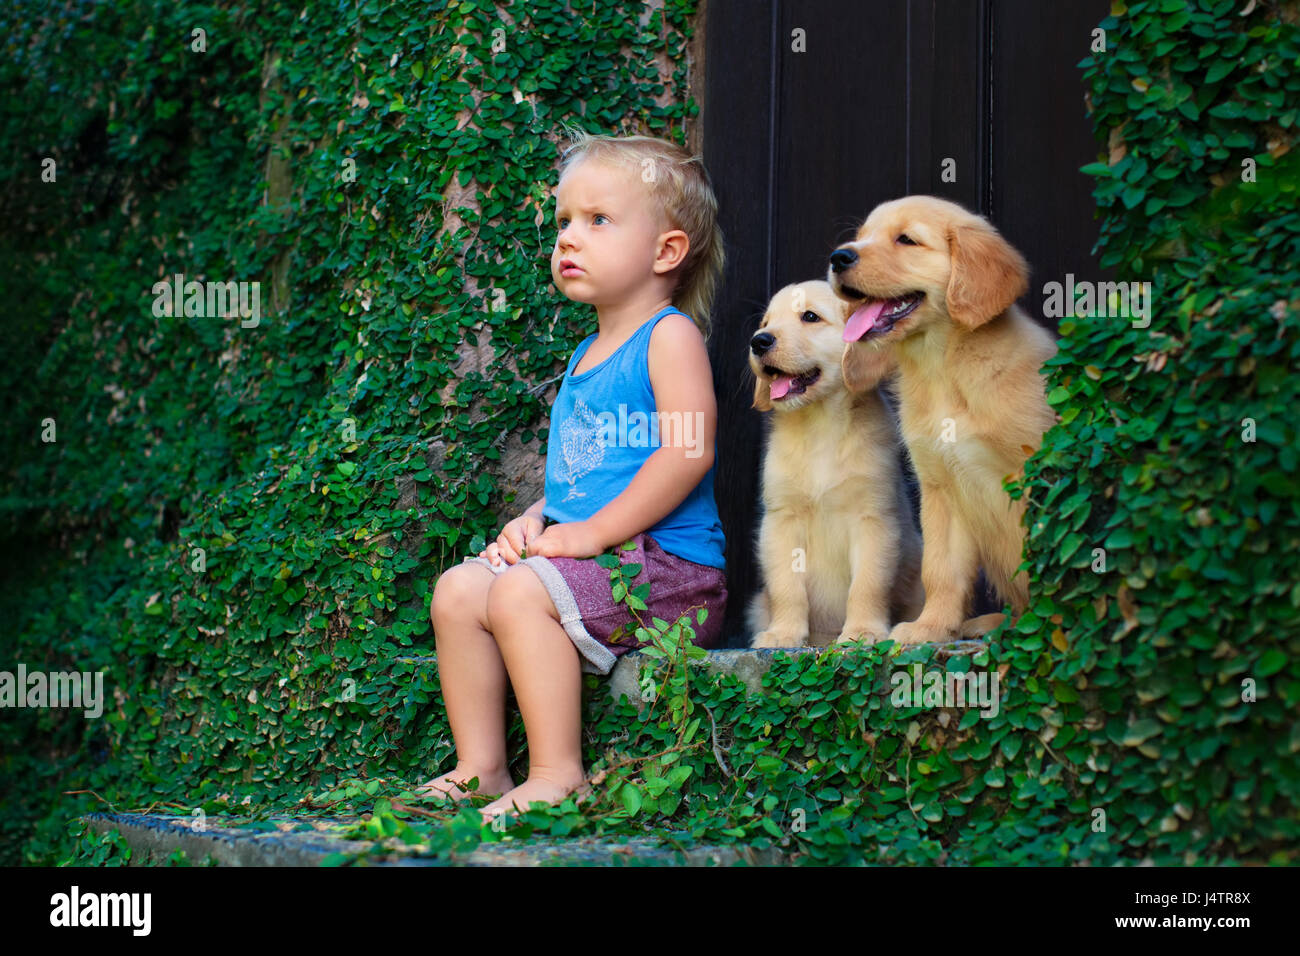 Funny photo de happy baby boy sitting avec deux chiots golden retriever du Labrador, jouent ensemble. Vie familiale, formation chien. Des émotions positives Banque D'Images